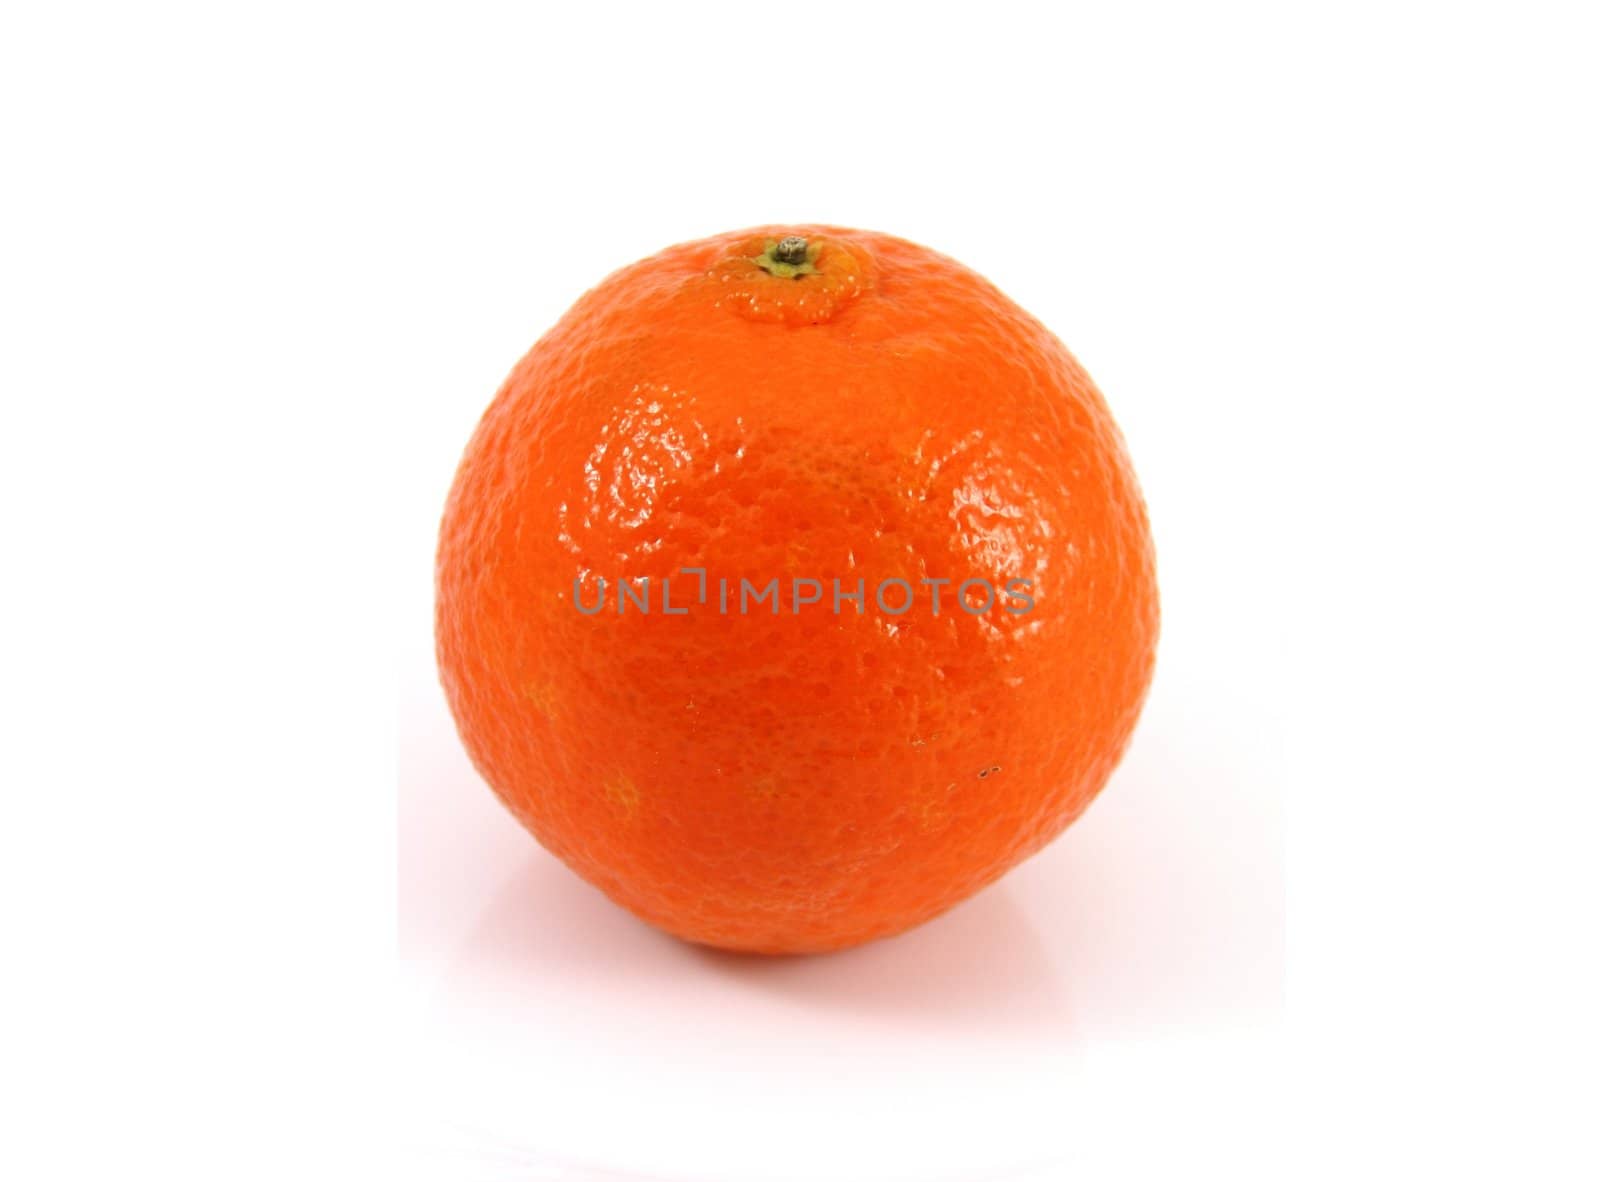 A ripe orange isolated on white.
